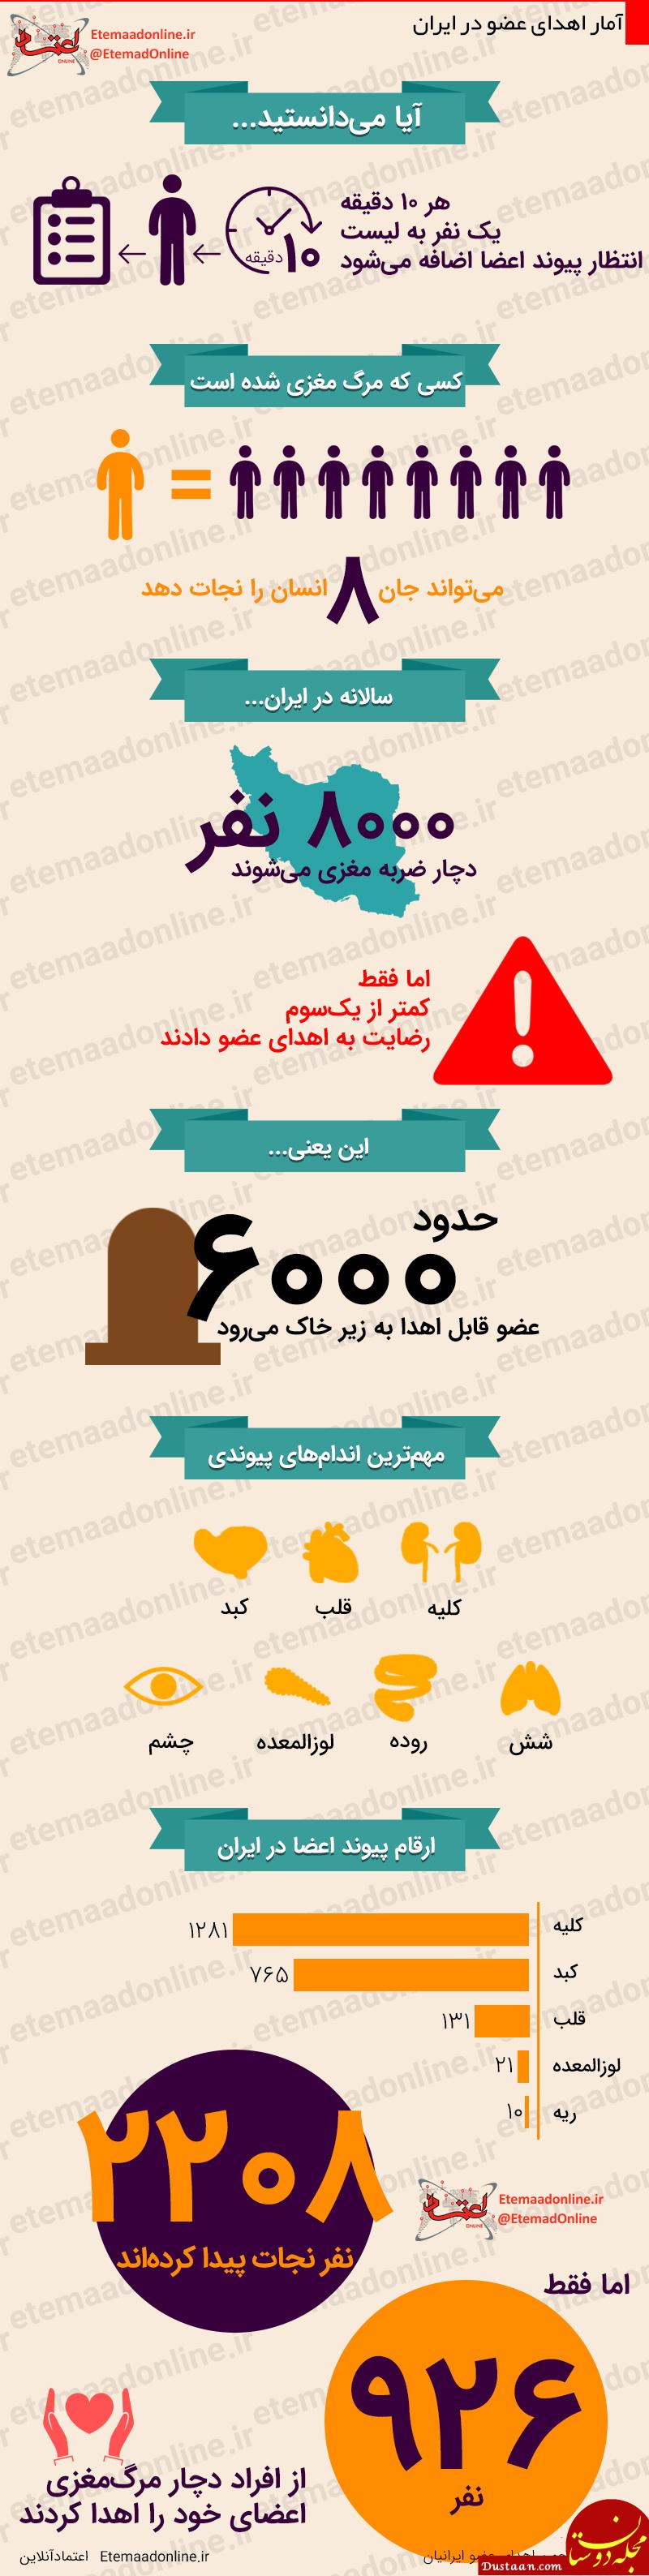 www.dustaan.com آمار اهدای عضو در ایران +اینفوگرافیک